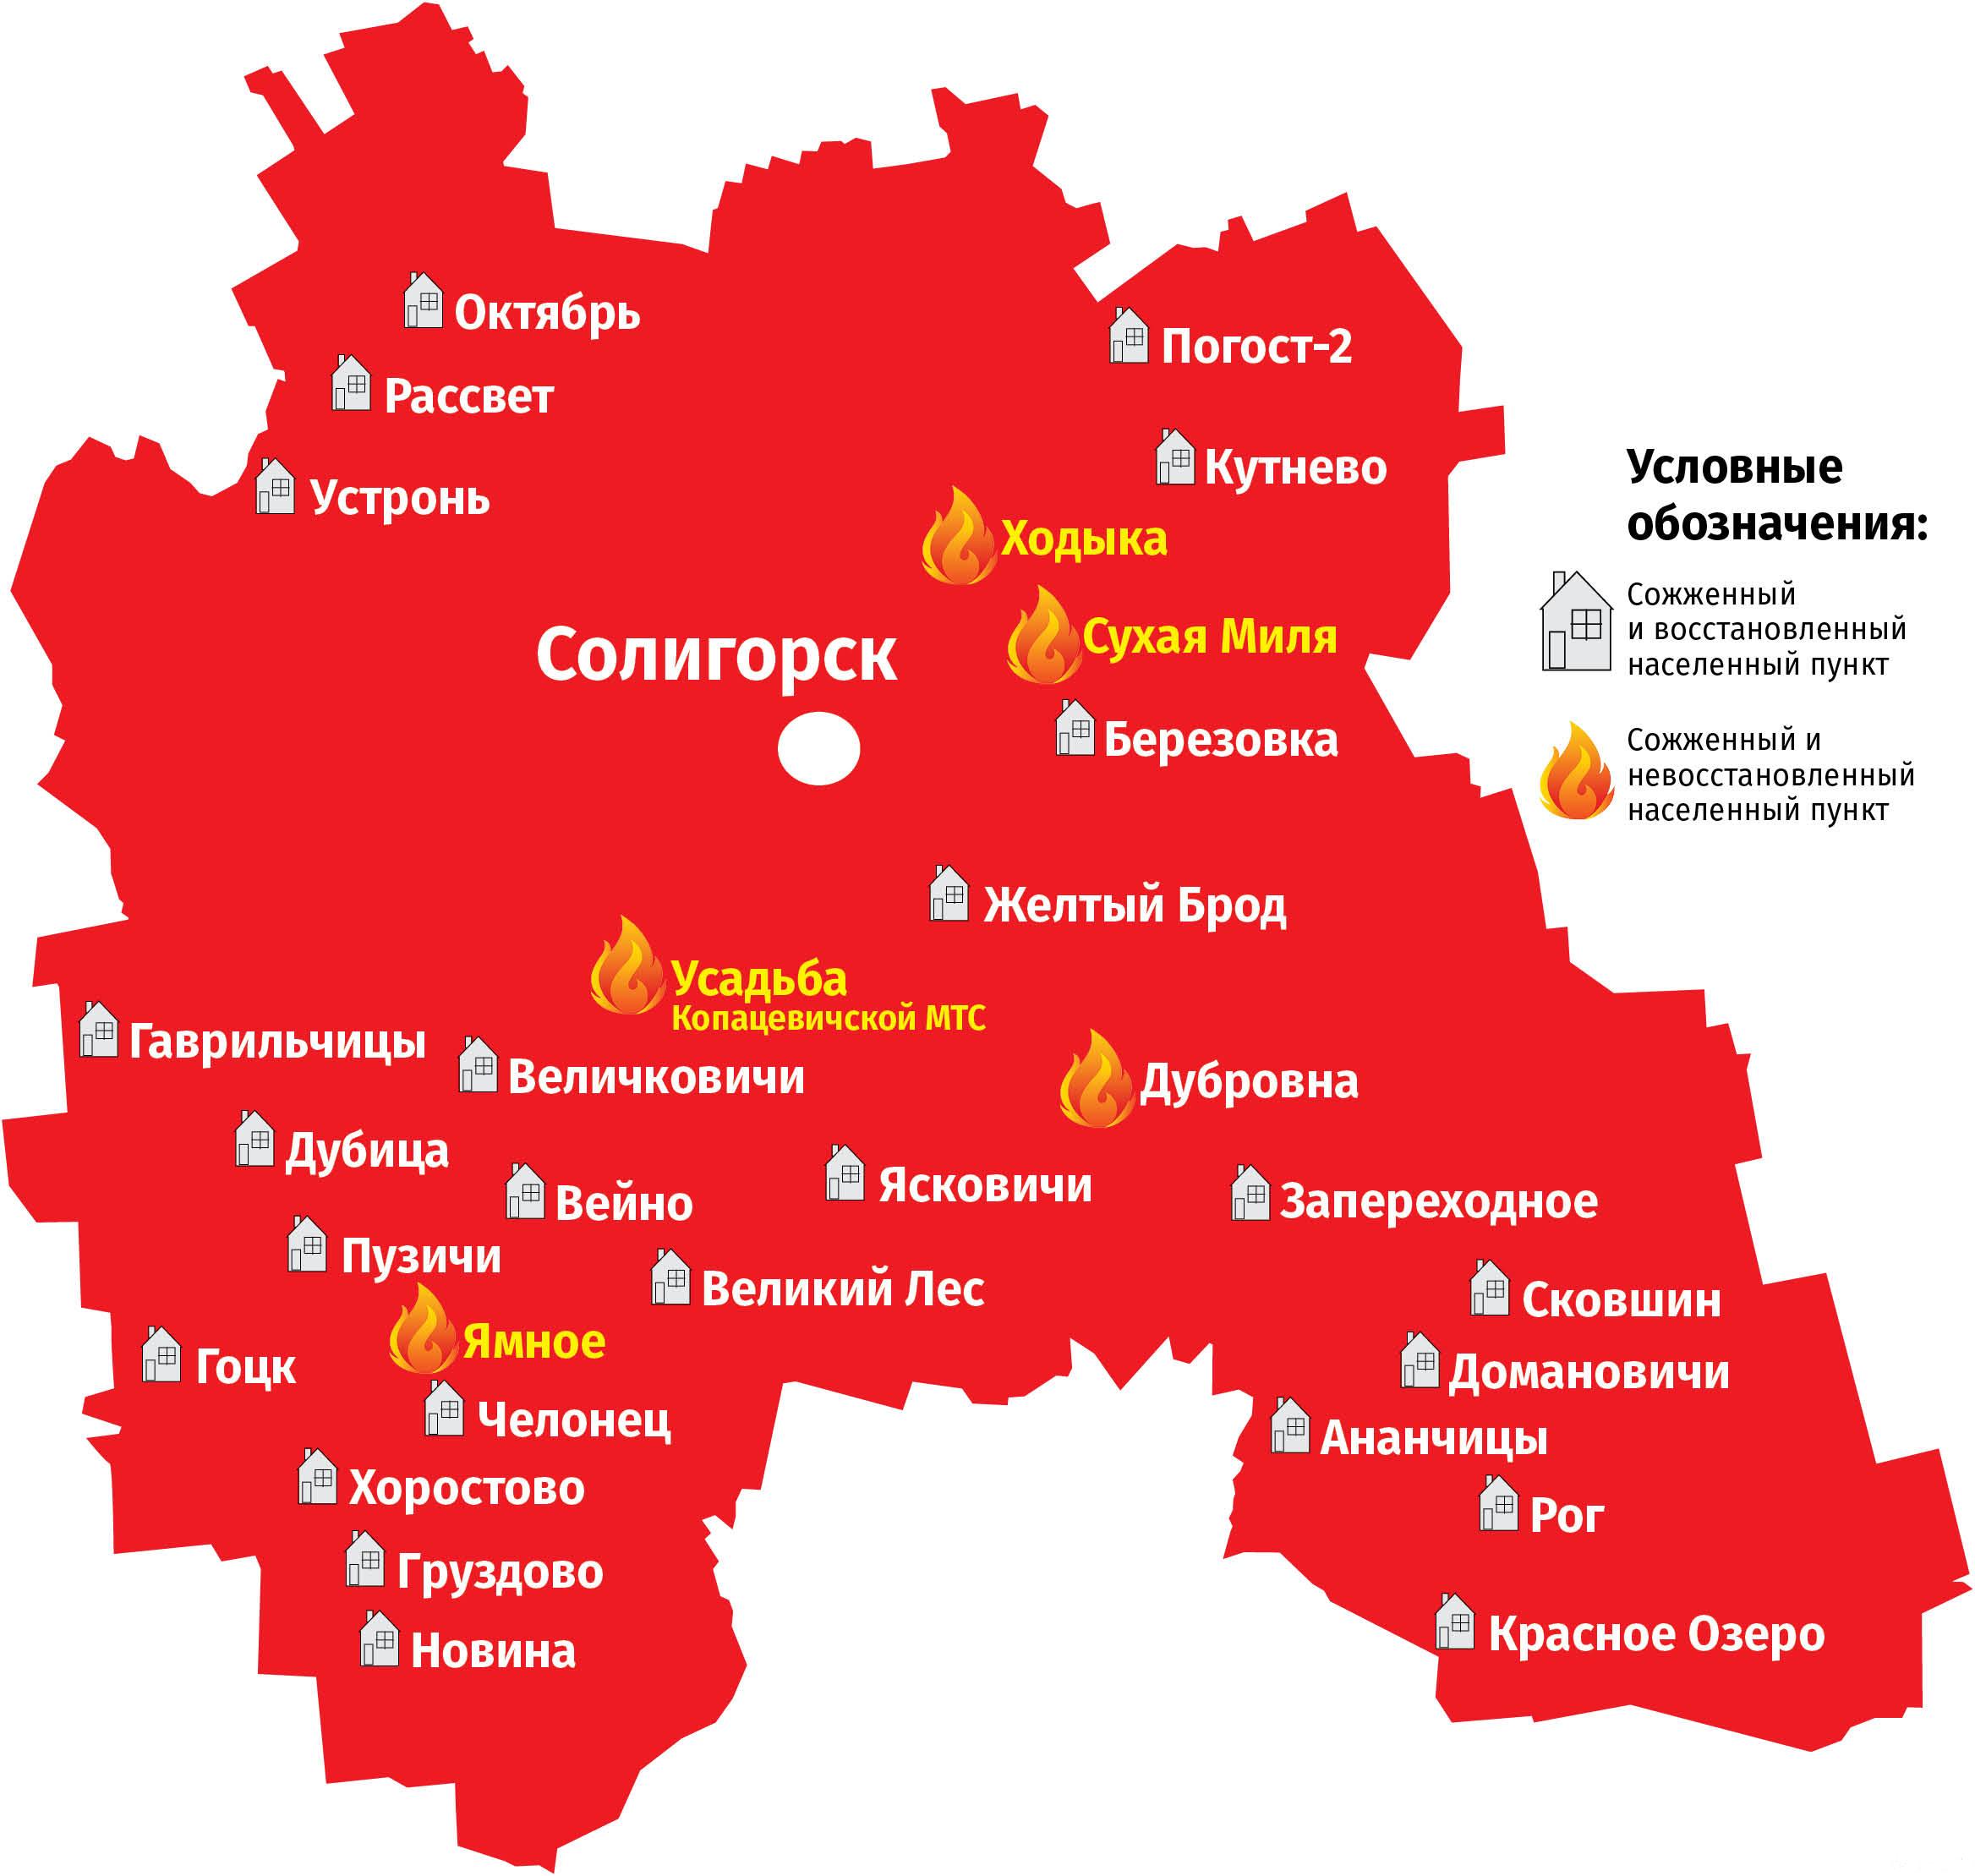 В зимогорье отметили 375-летие образования города и день шахтера праздничными мероприятиями » администрация славяносербского района